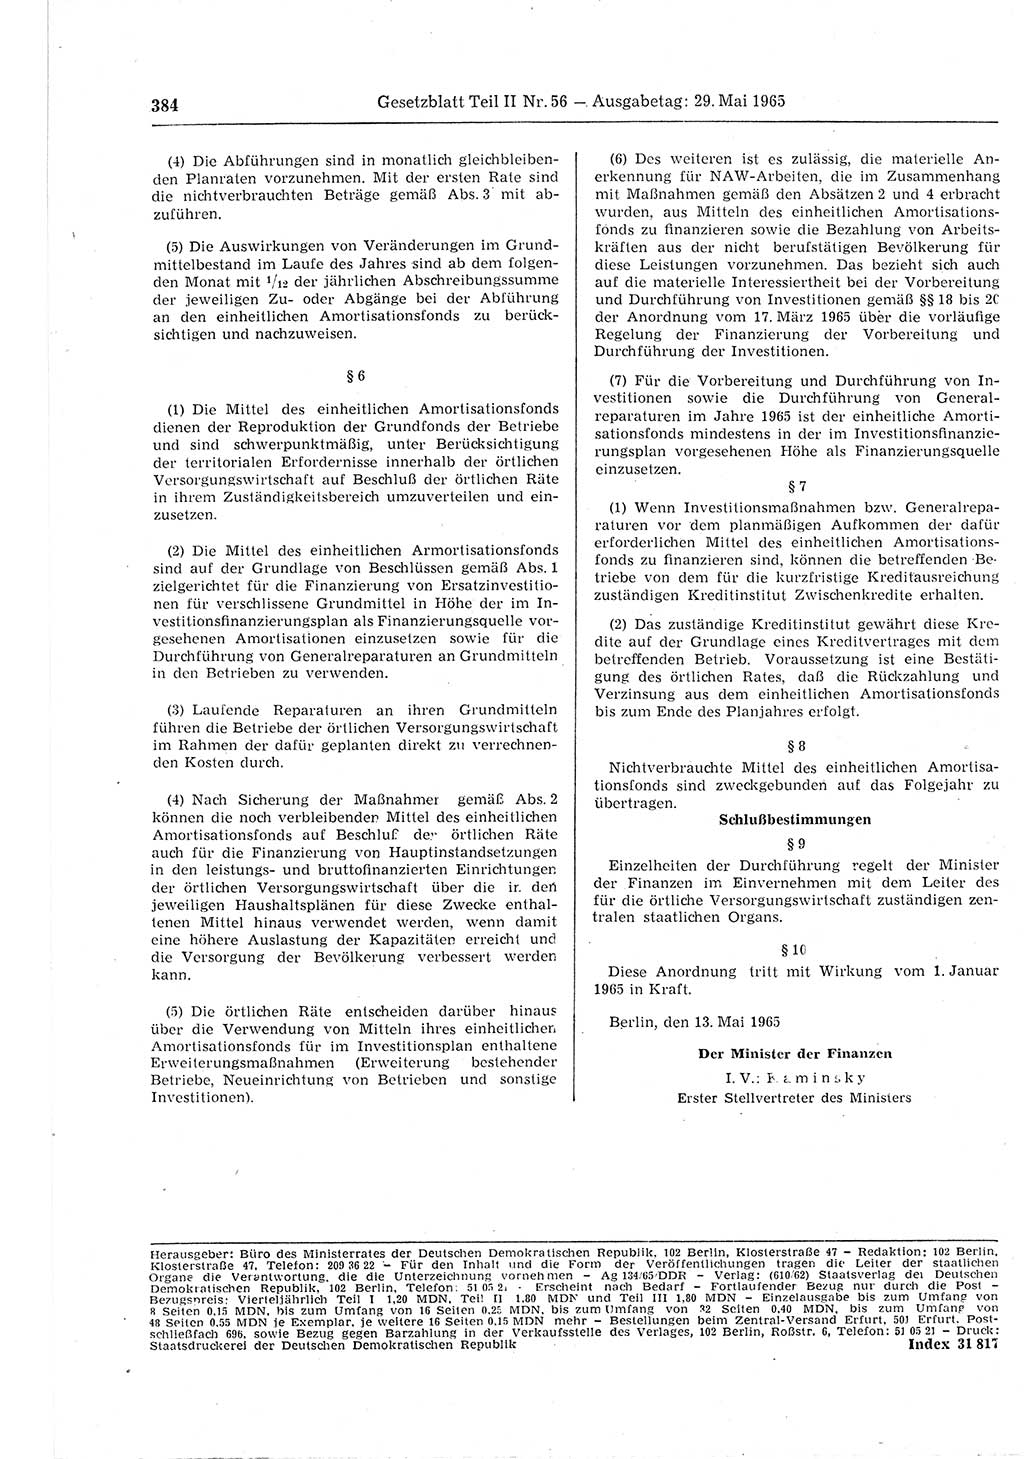 Gesetzblatt (GBl.) der Deutschen Demokratischen Republik (DDR) Teil ⅠⅠ 1965, Seite 384 (GBl. DDR ⅠⅠ 1965, S. 384)